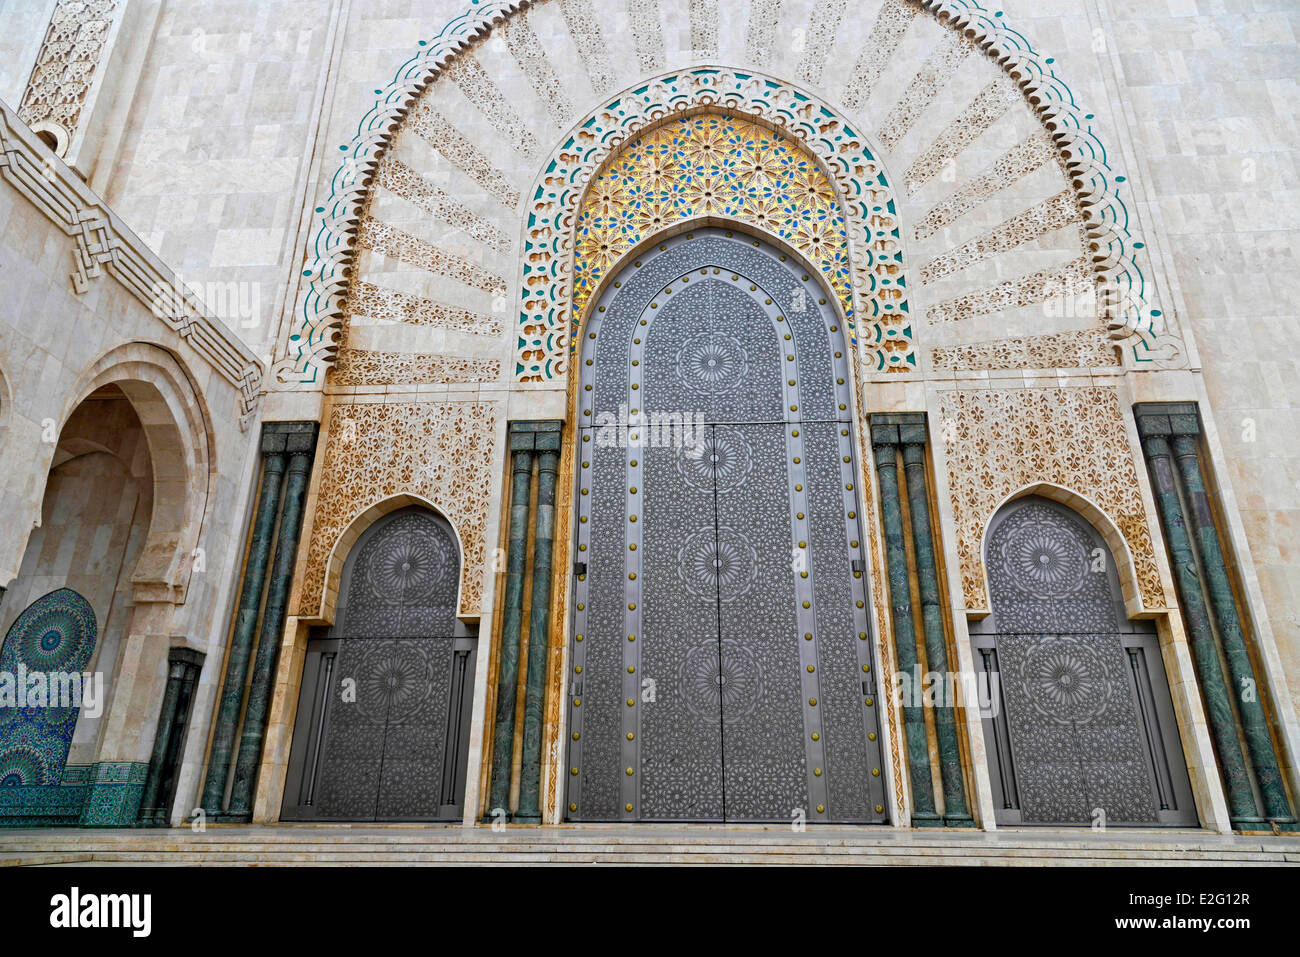 Marocco Casablanca grande moschea Hassan II di musulmani in stile arabo costruito dall'architetto Michel Pinseau nel 1986 Foto Stock